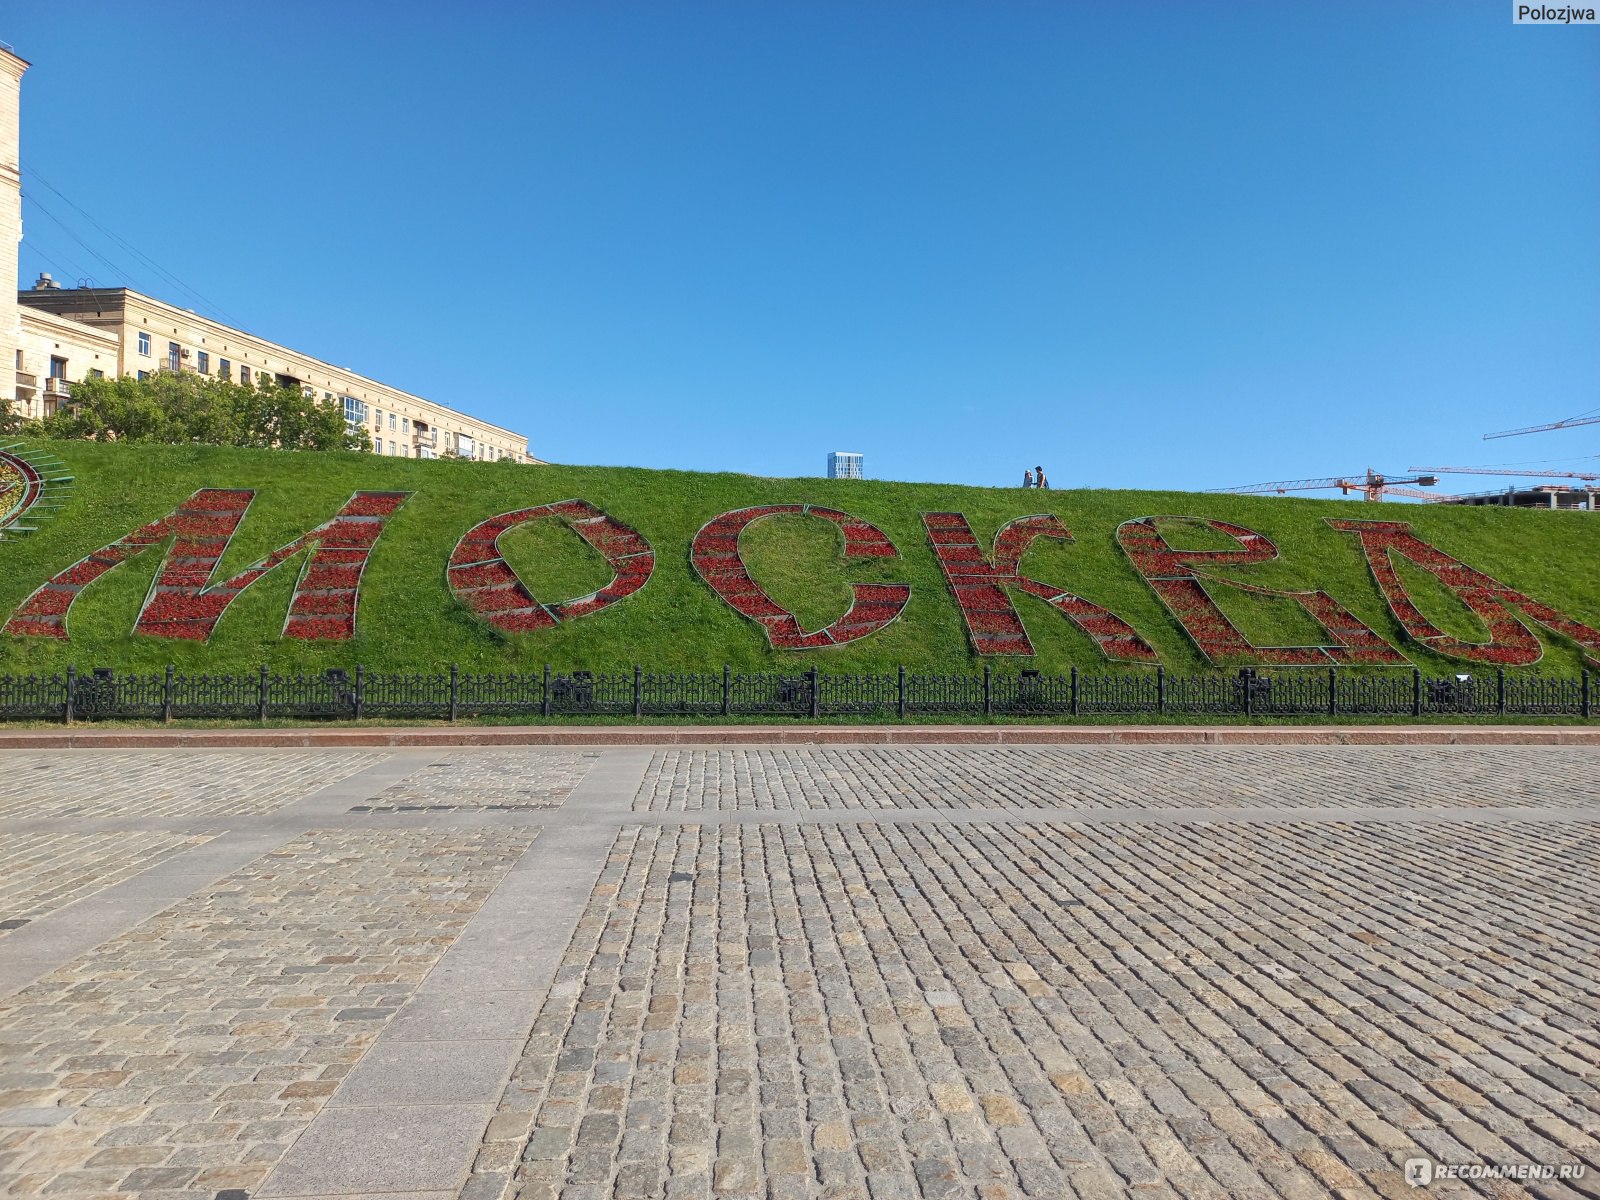 памятник куча в москве